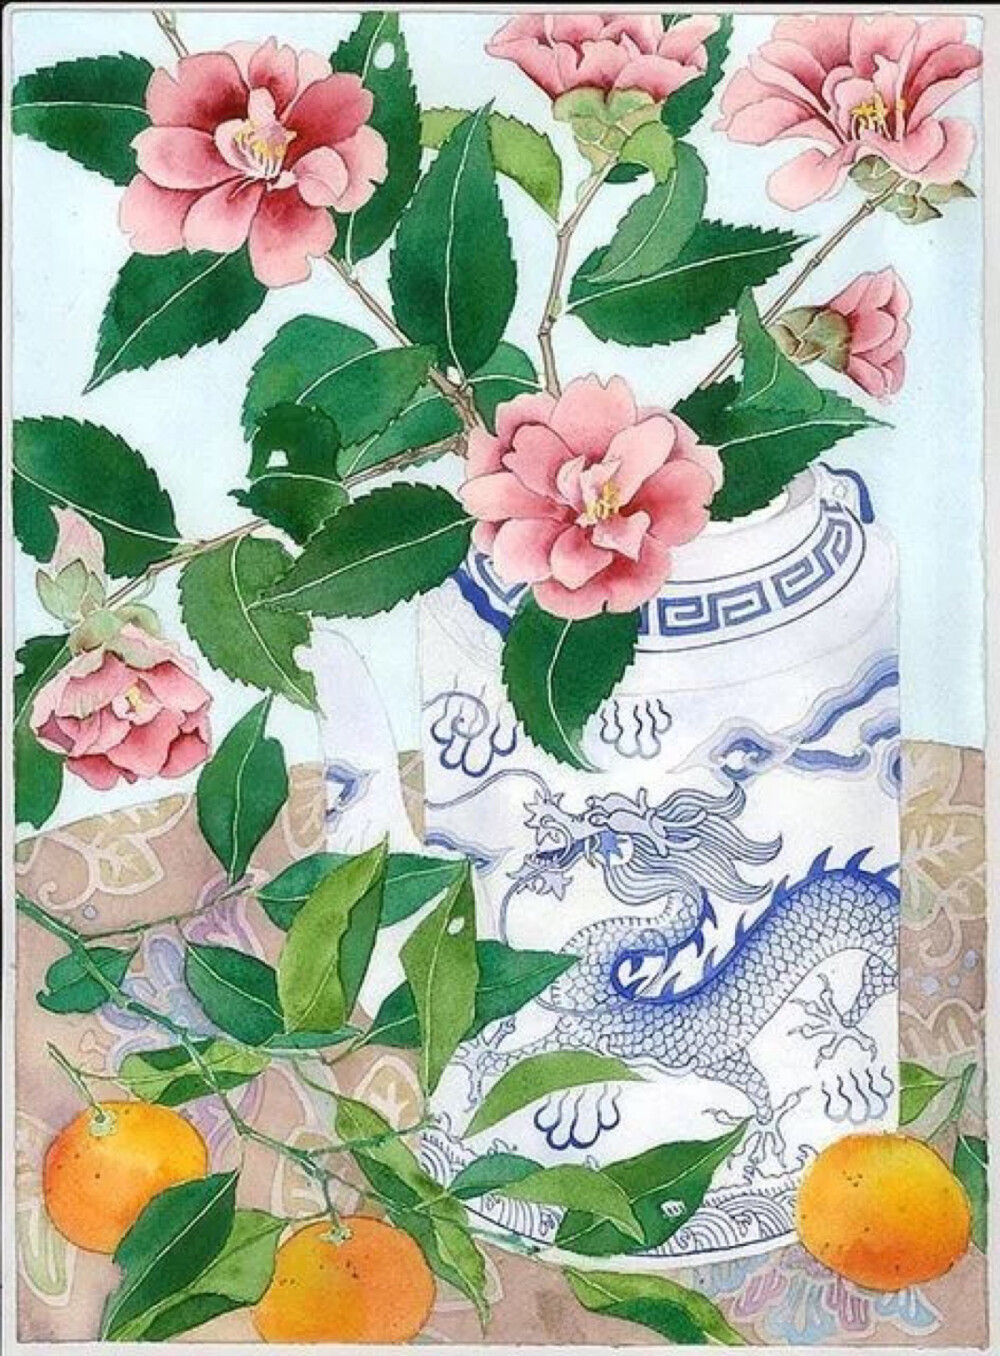 Mango Frooty 是陶瓷专业出身
但一直对水彩画有着浓厚的兴趣
她将自然中的植物花卉
都描绘得丝丝入扣
再富有中国特色的花瓶瓷器相搭配
竟然营造出我们所熟悉的中国味道
